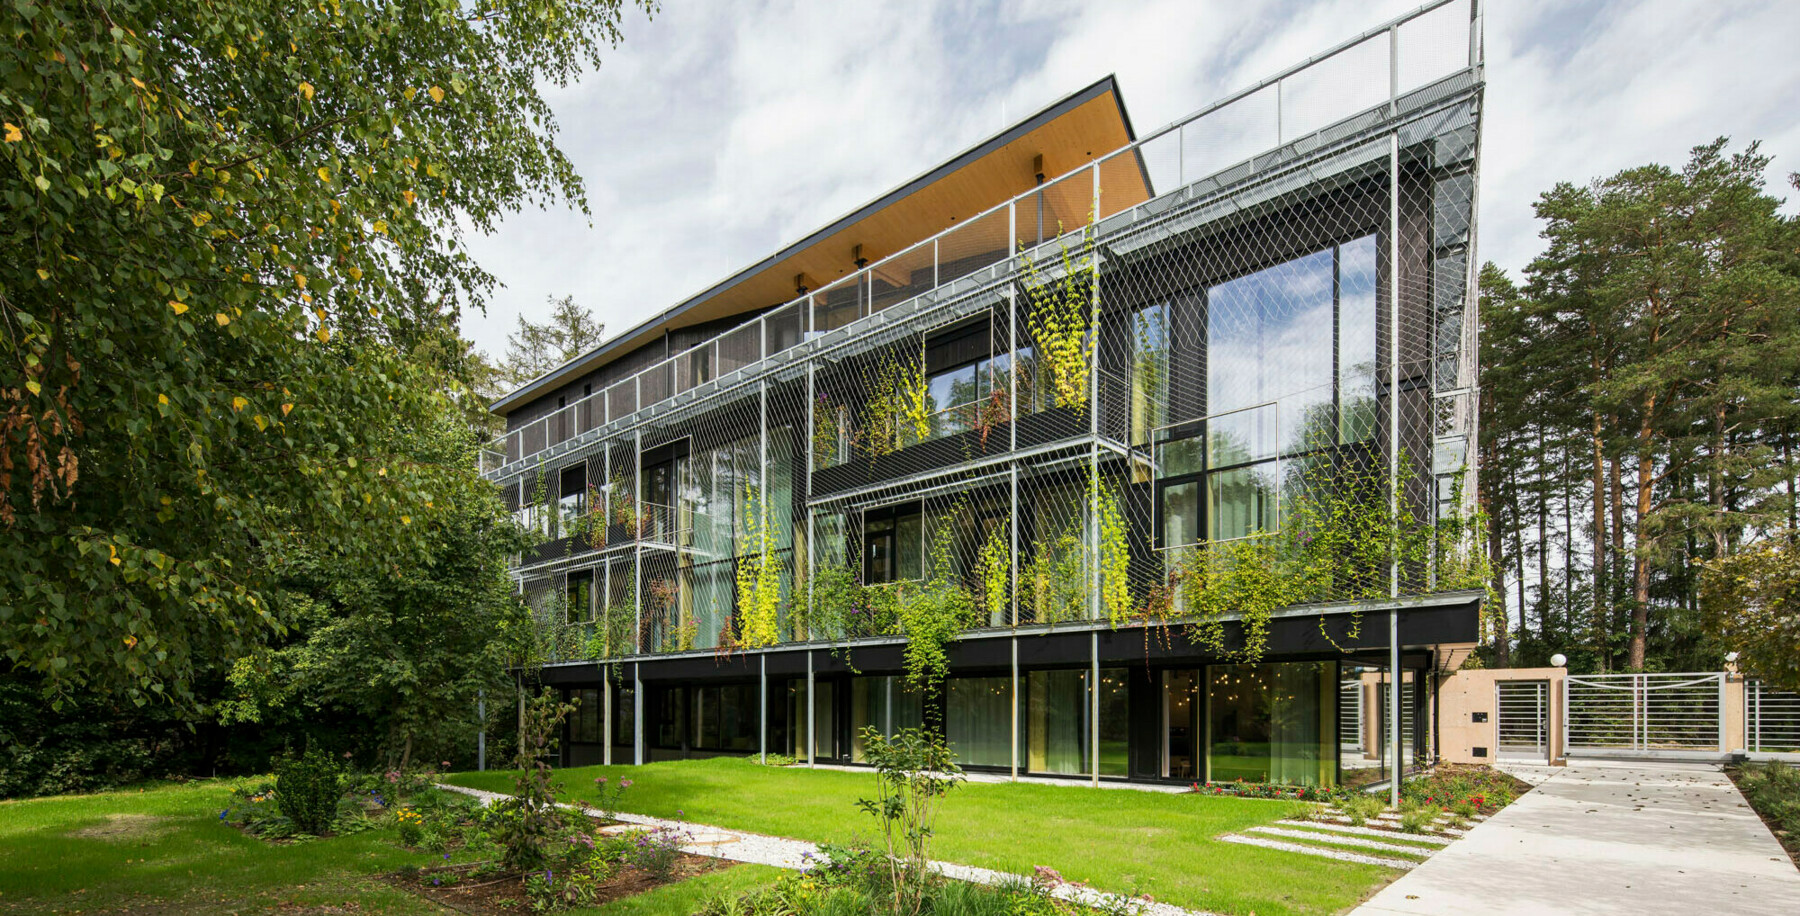 Die Fassade des ASI Firmensitzes wird geschmückt durch grüne Kletterpflanzen, die das Gebäude noch mehr als Teil der umgebenen Natur scheinen lassen. 